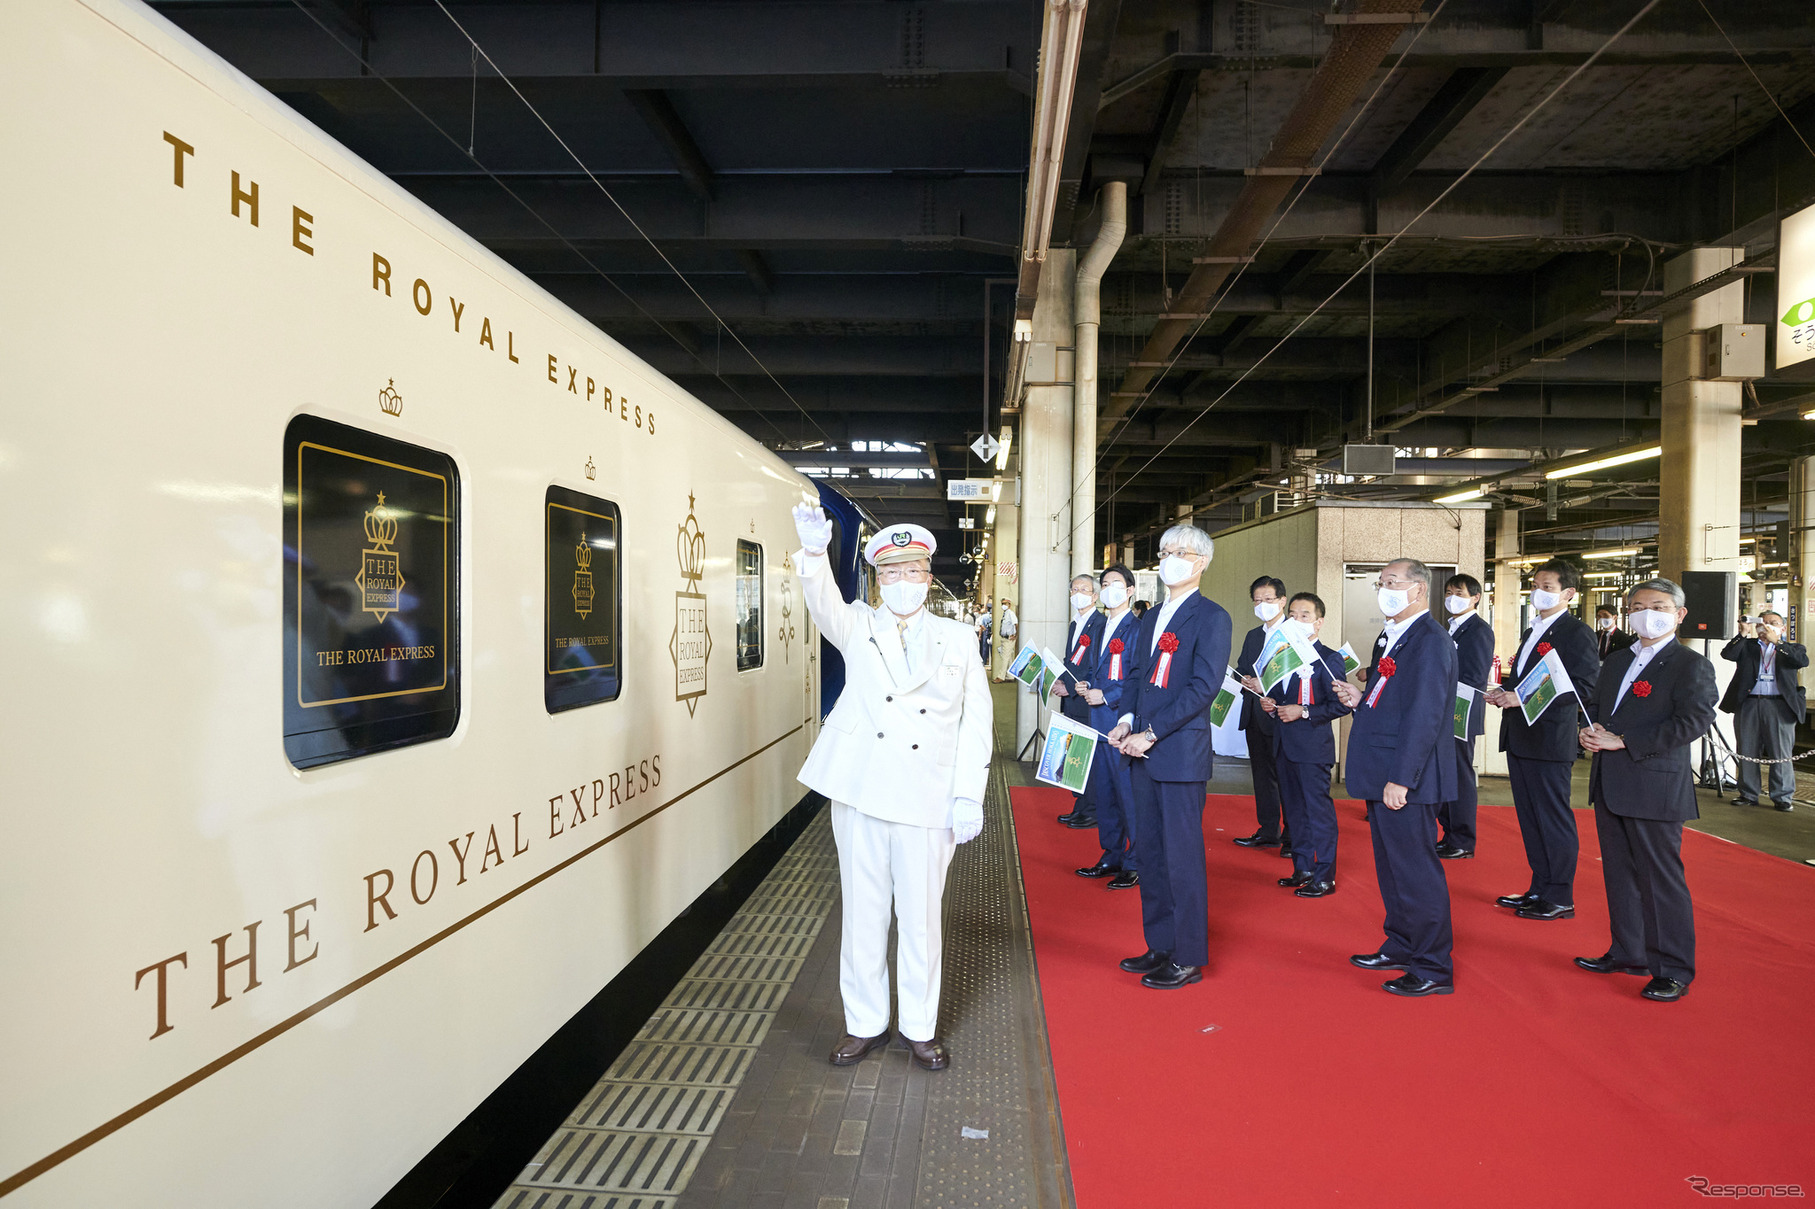 第2四半期では新たな取組みとして、東急の観光列車『ROYAL EXPRESS』が3回運行され、地域の賑わいや観光需要を創出したとしている。